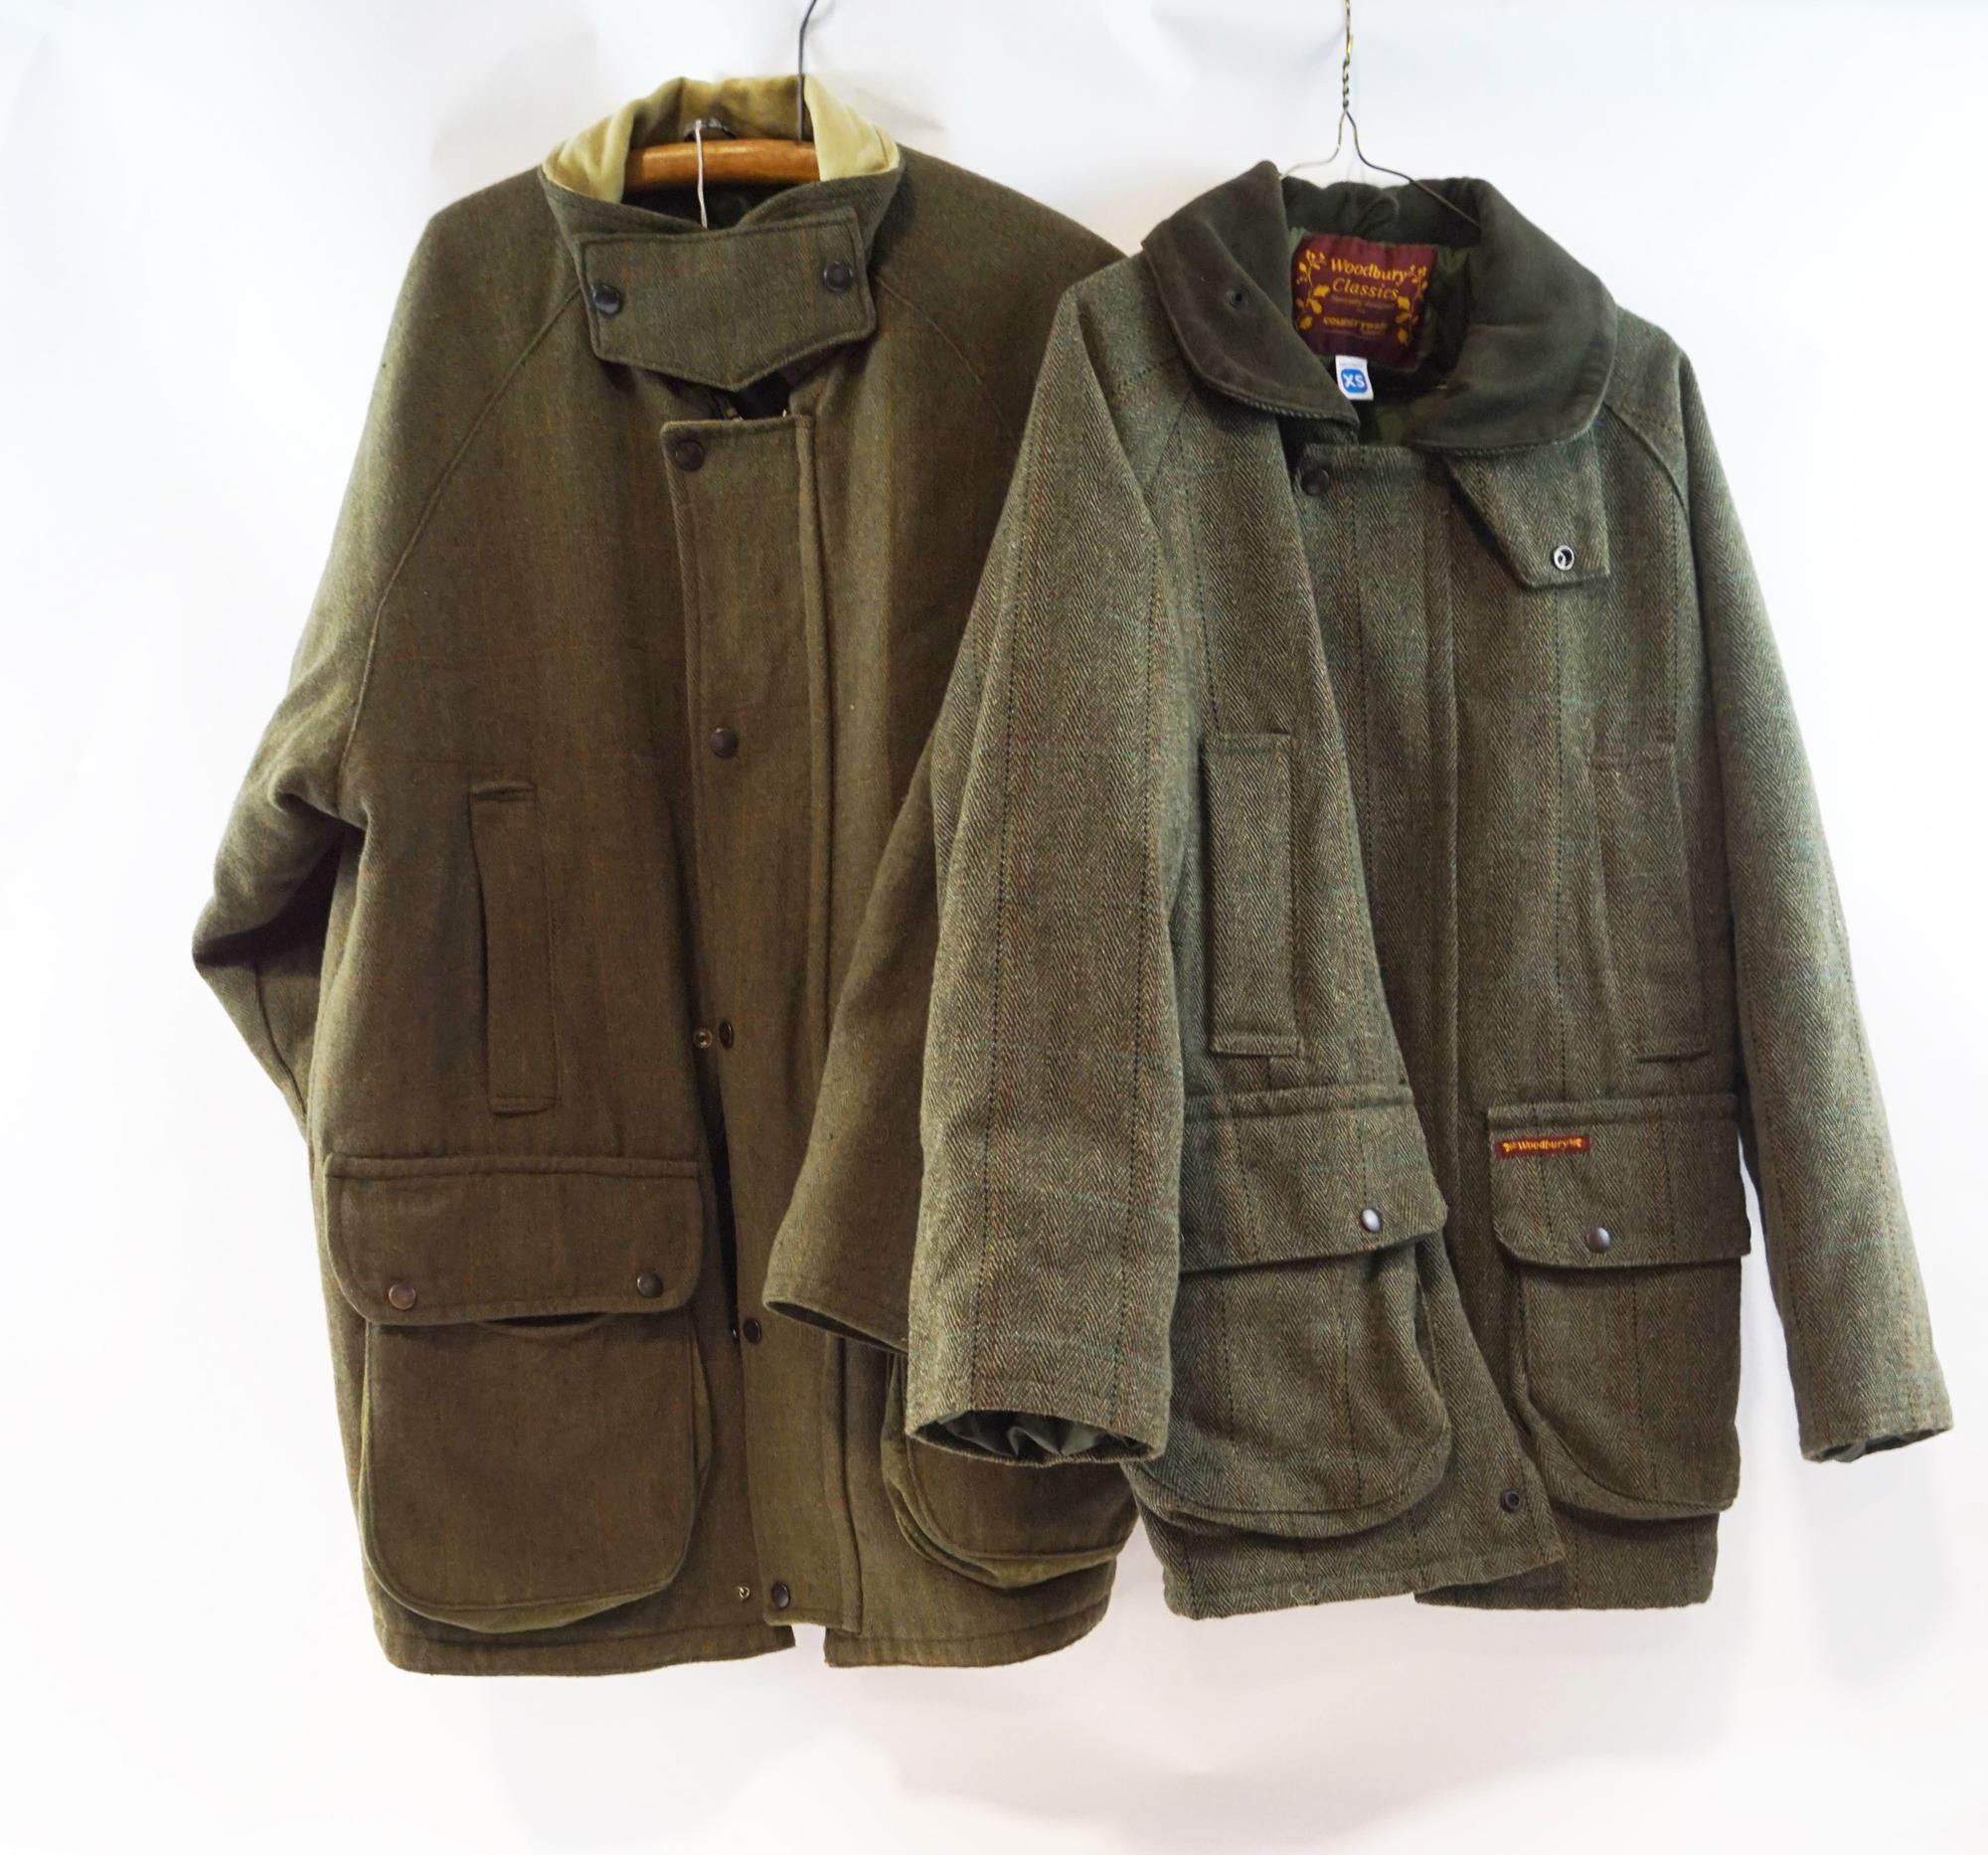 A Ladies 'Woodbury Classics' tweed fishing jacket, size 'XS' and a gentleman's tweed fishing jacket,